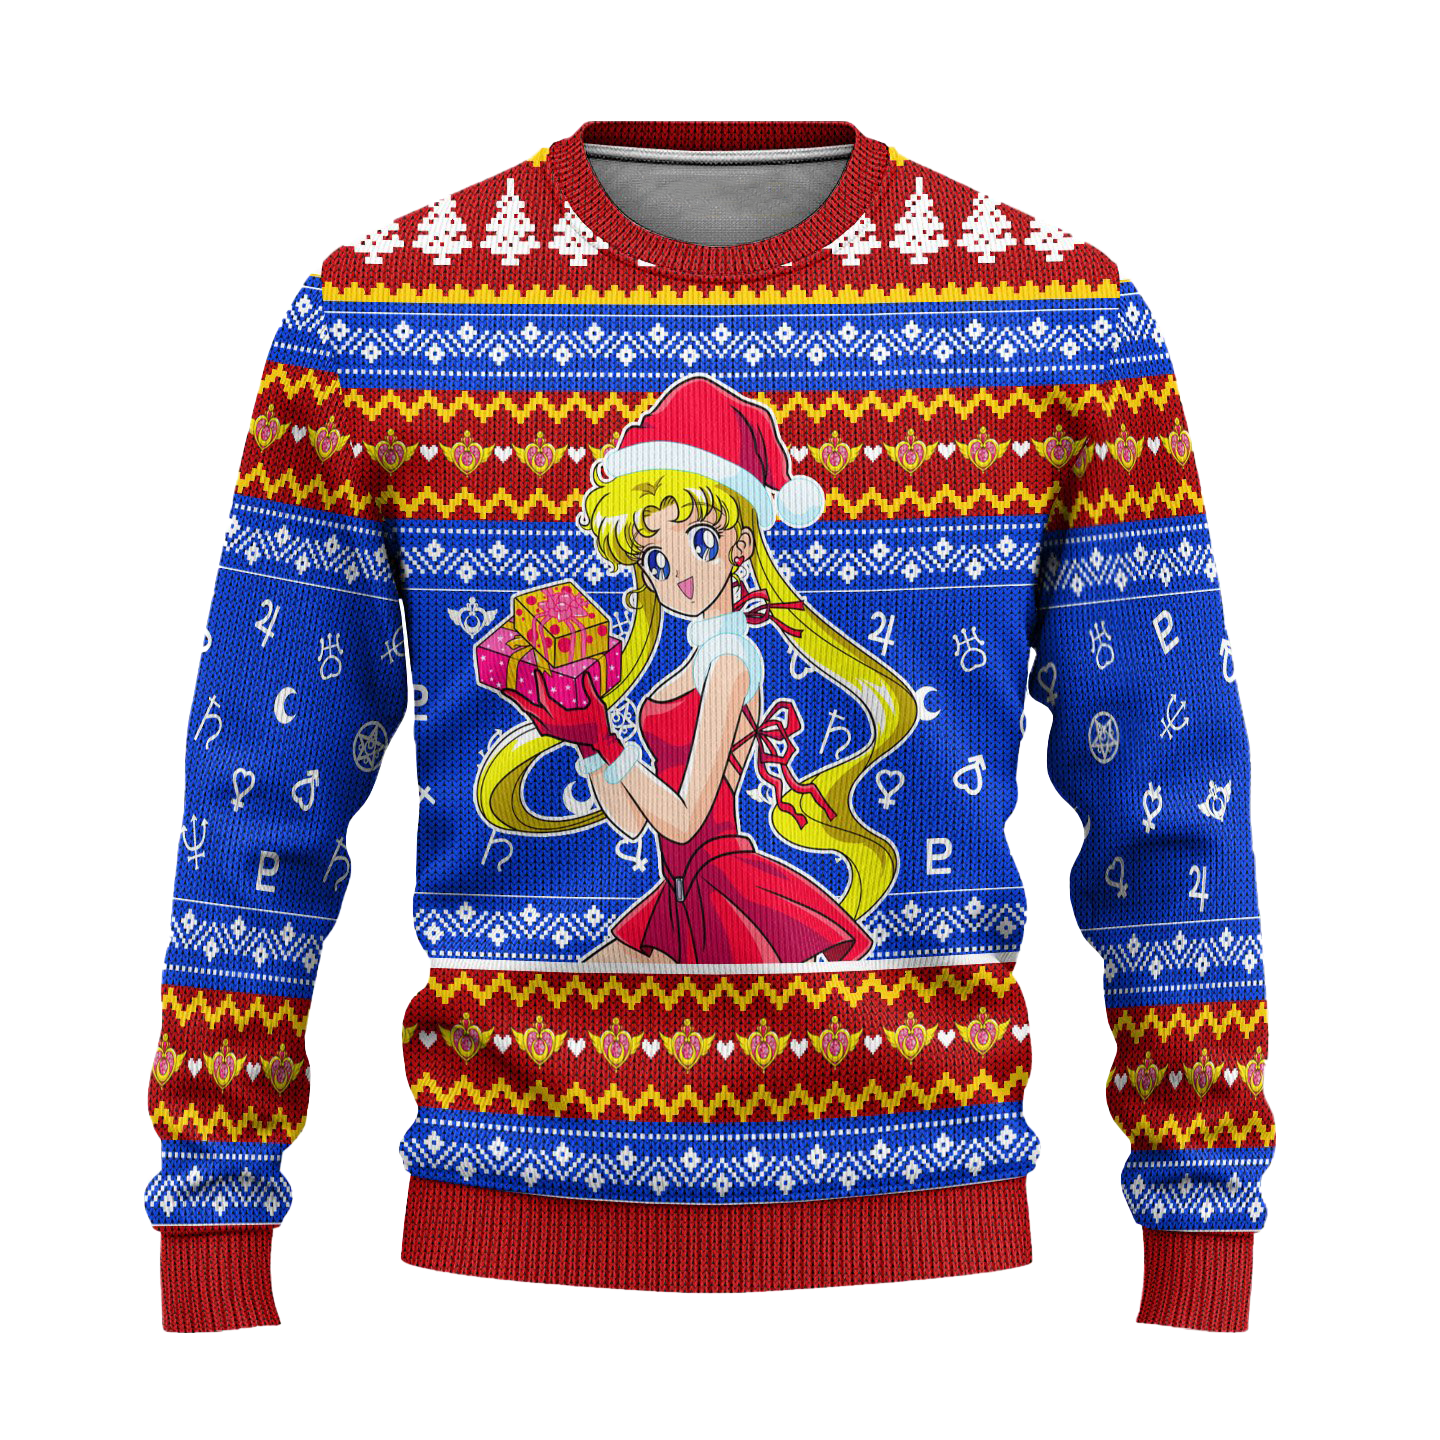 Sailor Moon Ugly Christmas Sweater Anime Xmas Gift